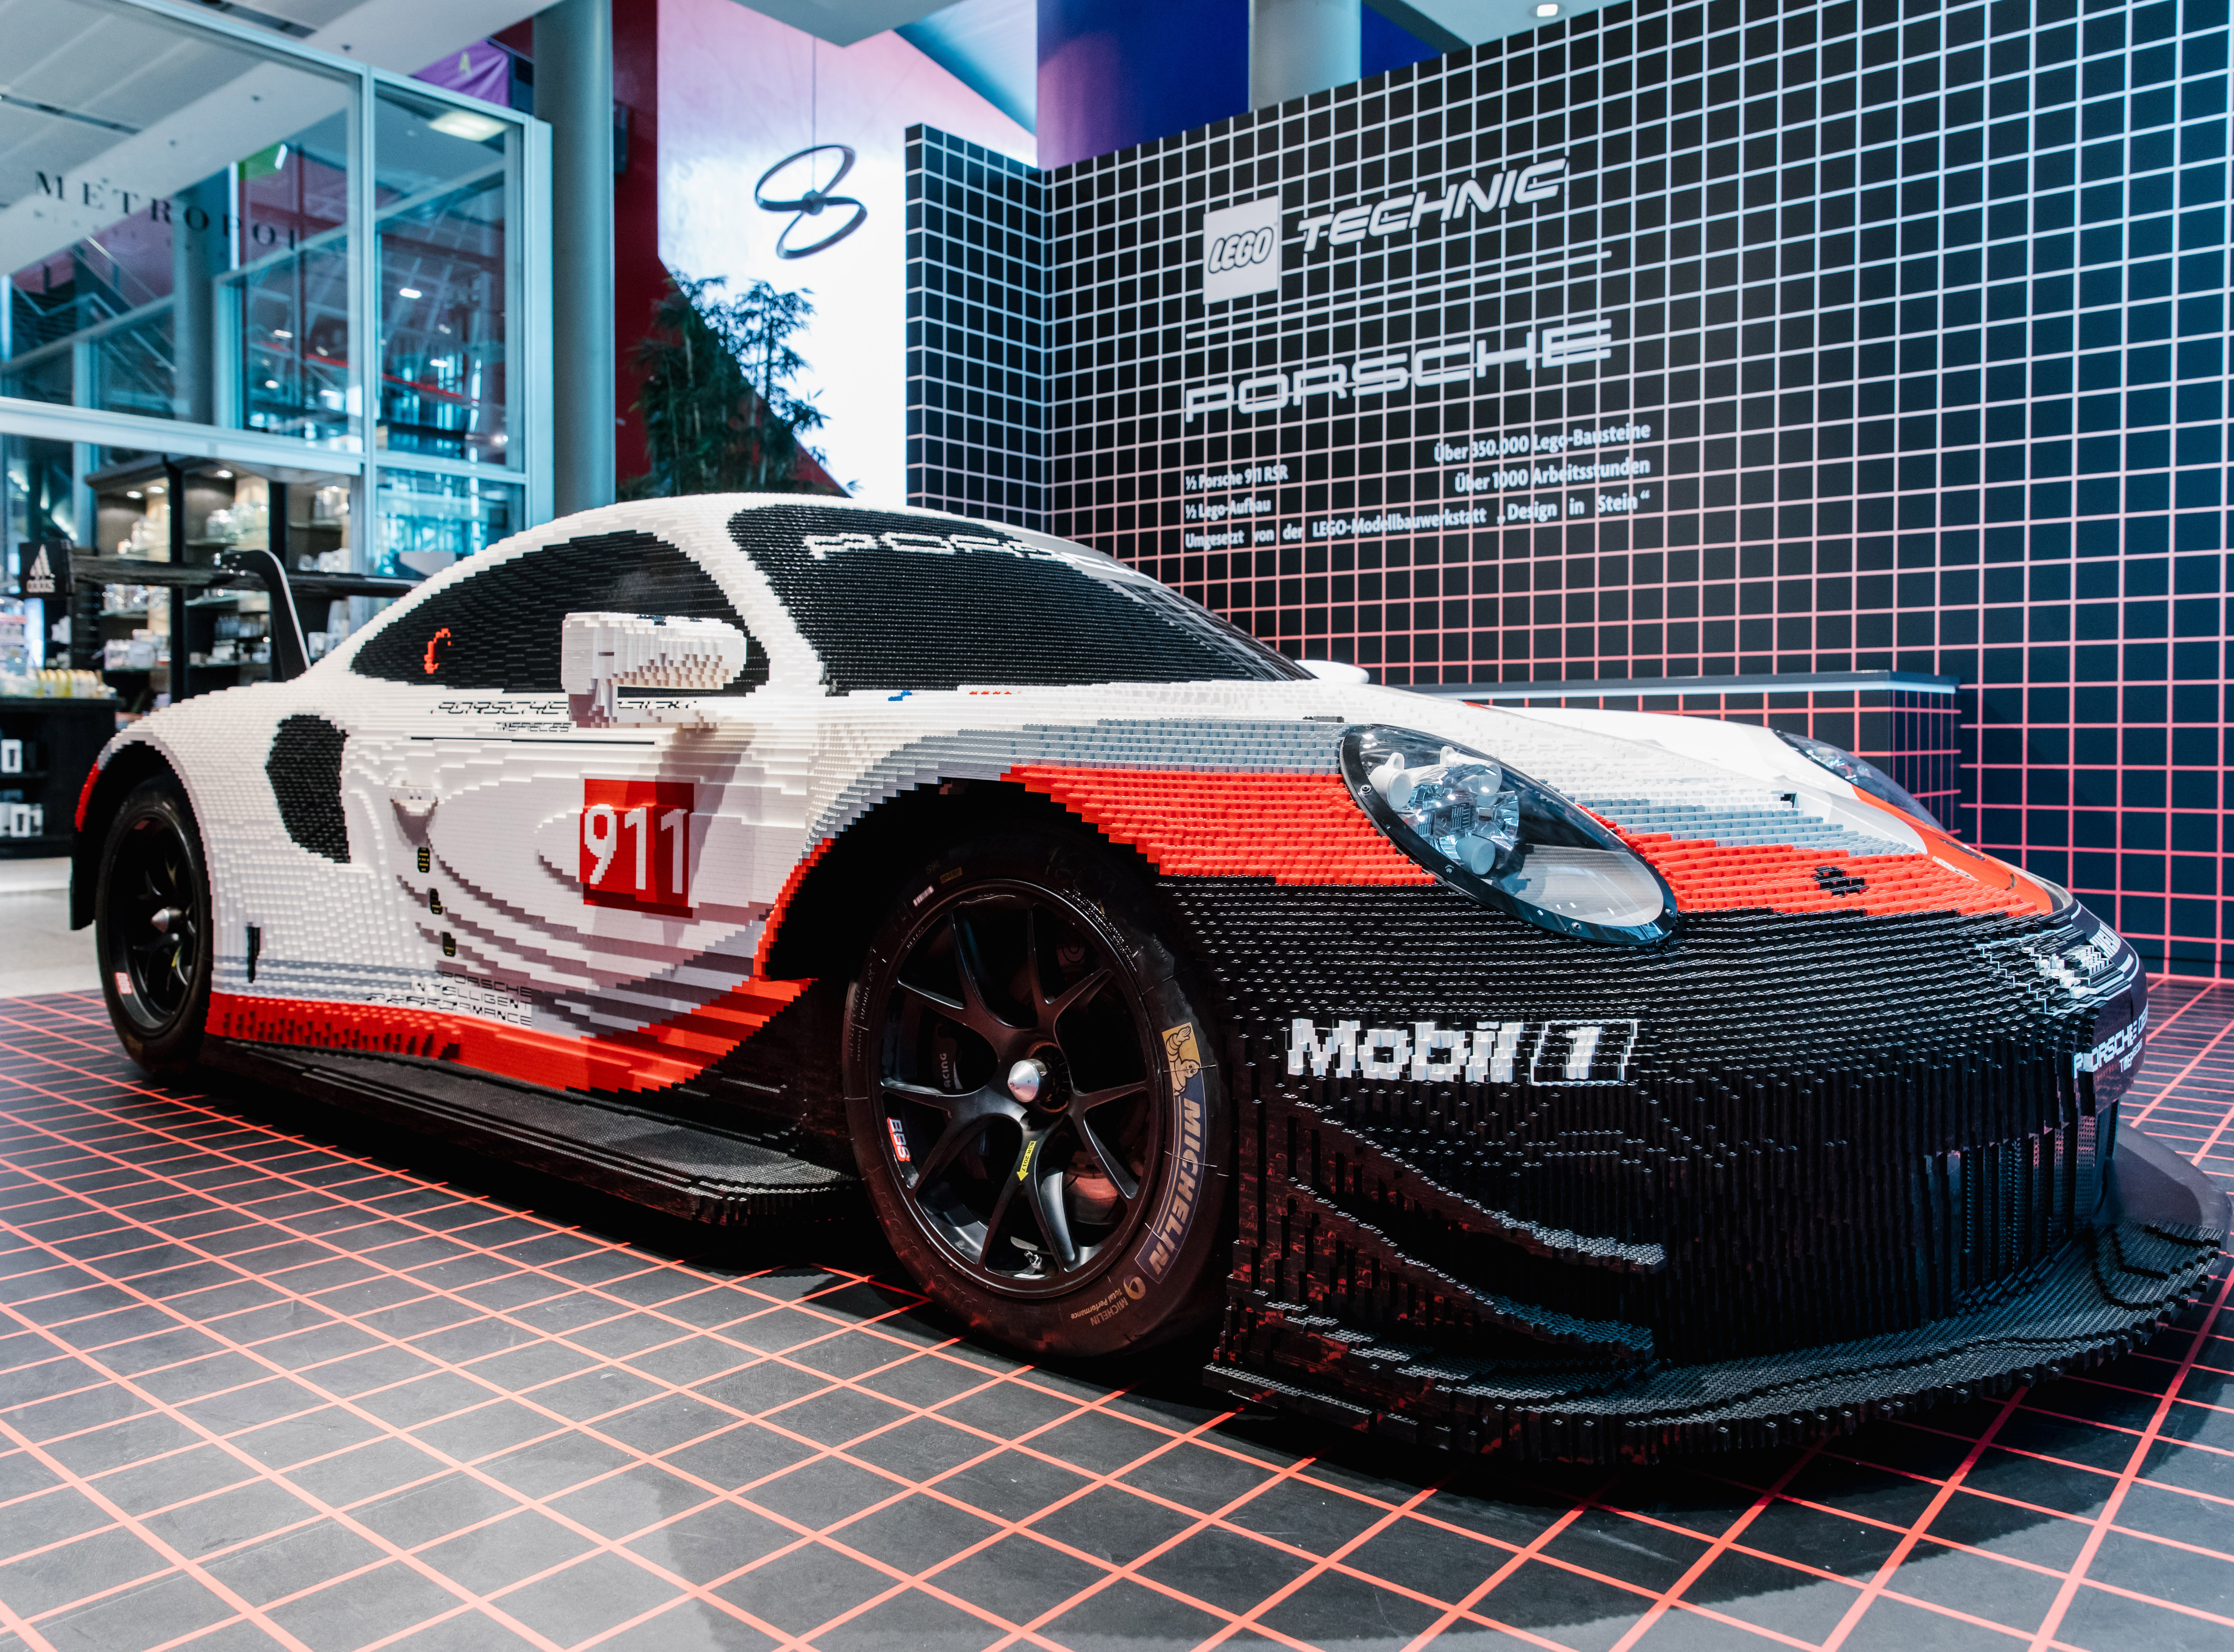 Halv Lego Porsche 911 i fuld størrelse Bilmagasinet.dk